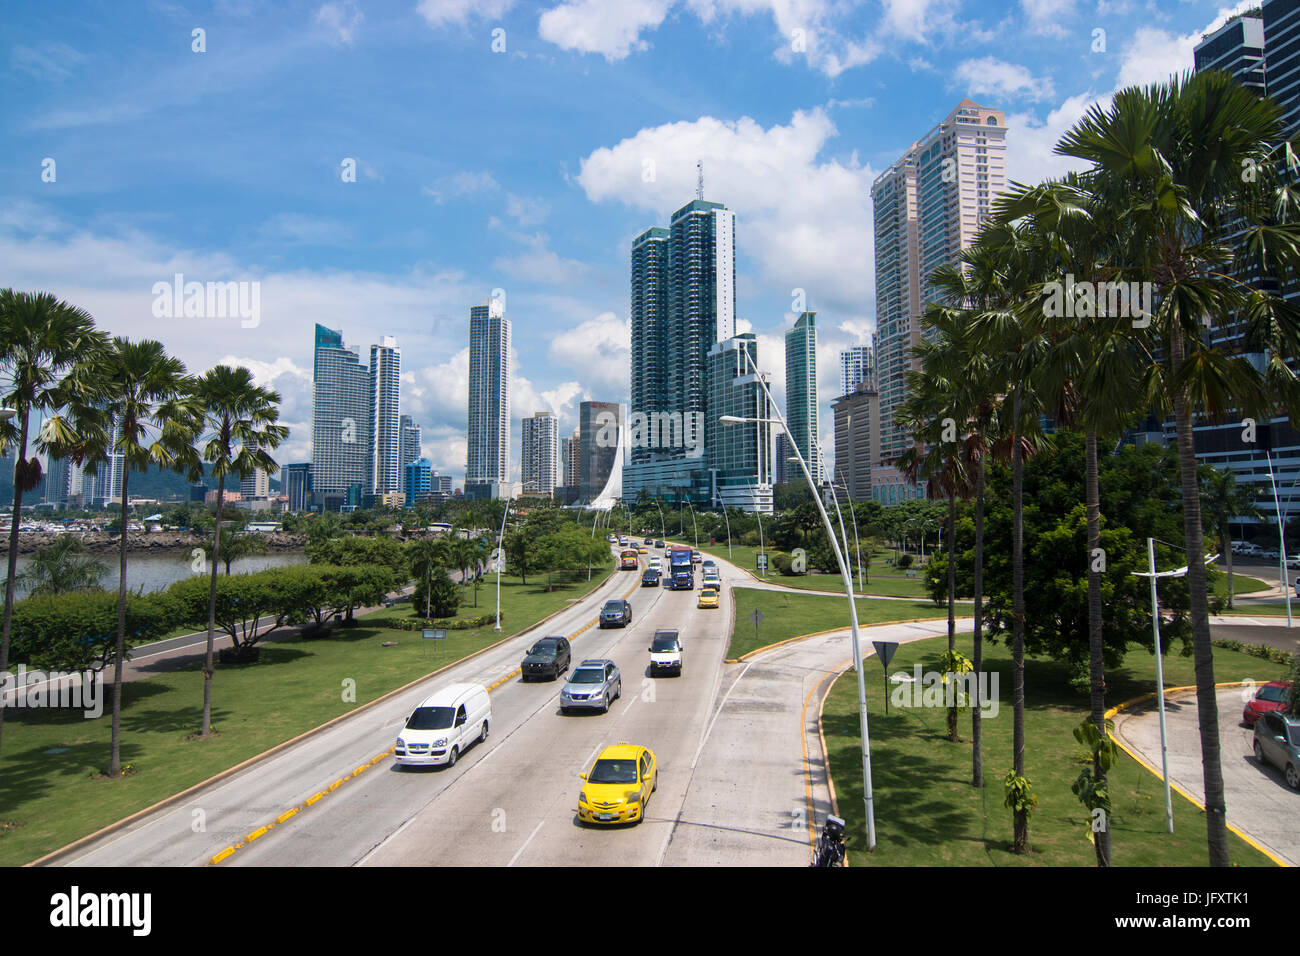 Cinta Costera avec les voitures et les immeubles de grande hauteur, Panama City, Panama Banque D'Images